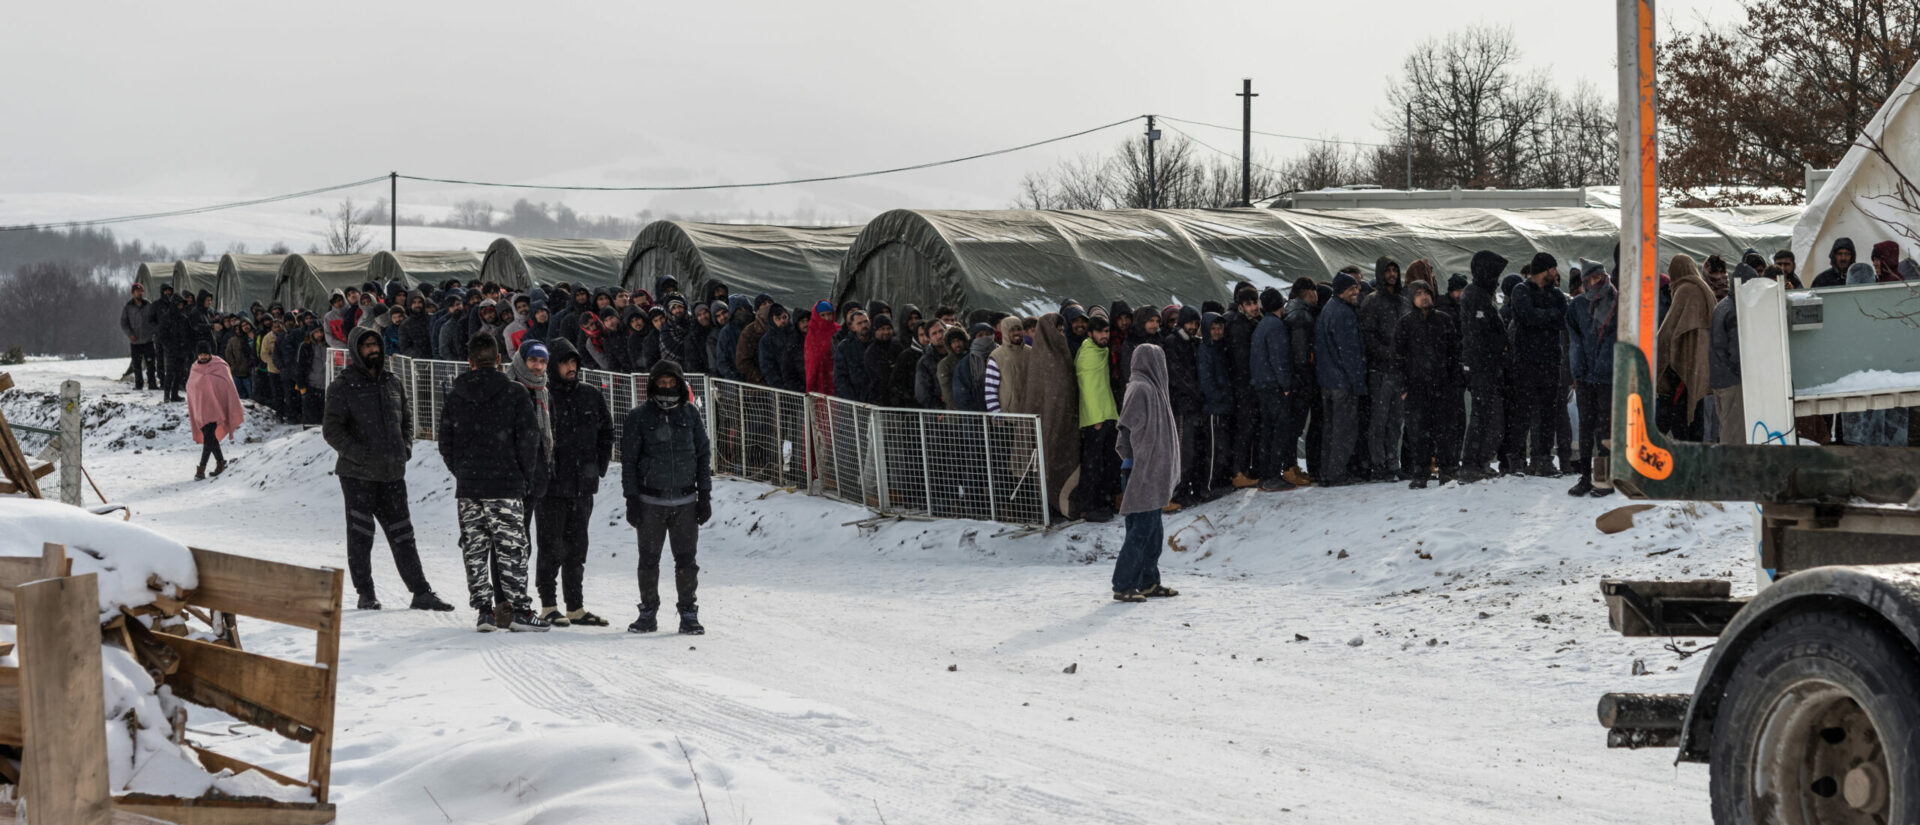 Des milliers de réfugiés sont bloqués en Bosnie-Herzégovine, à la frontière avec la Croatie | © Caritas Ambrosiana